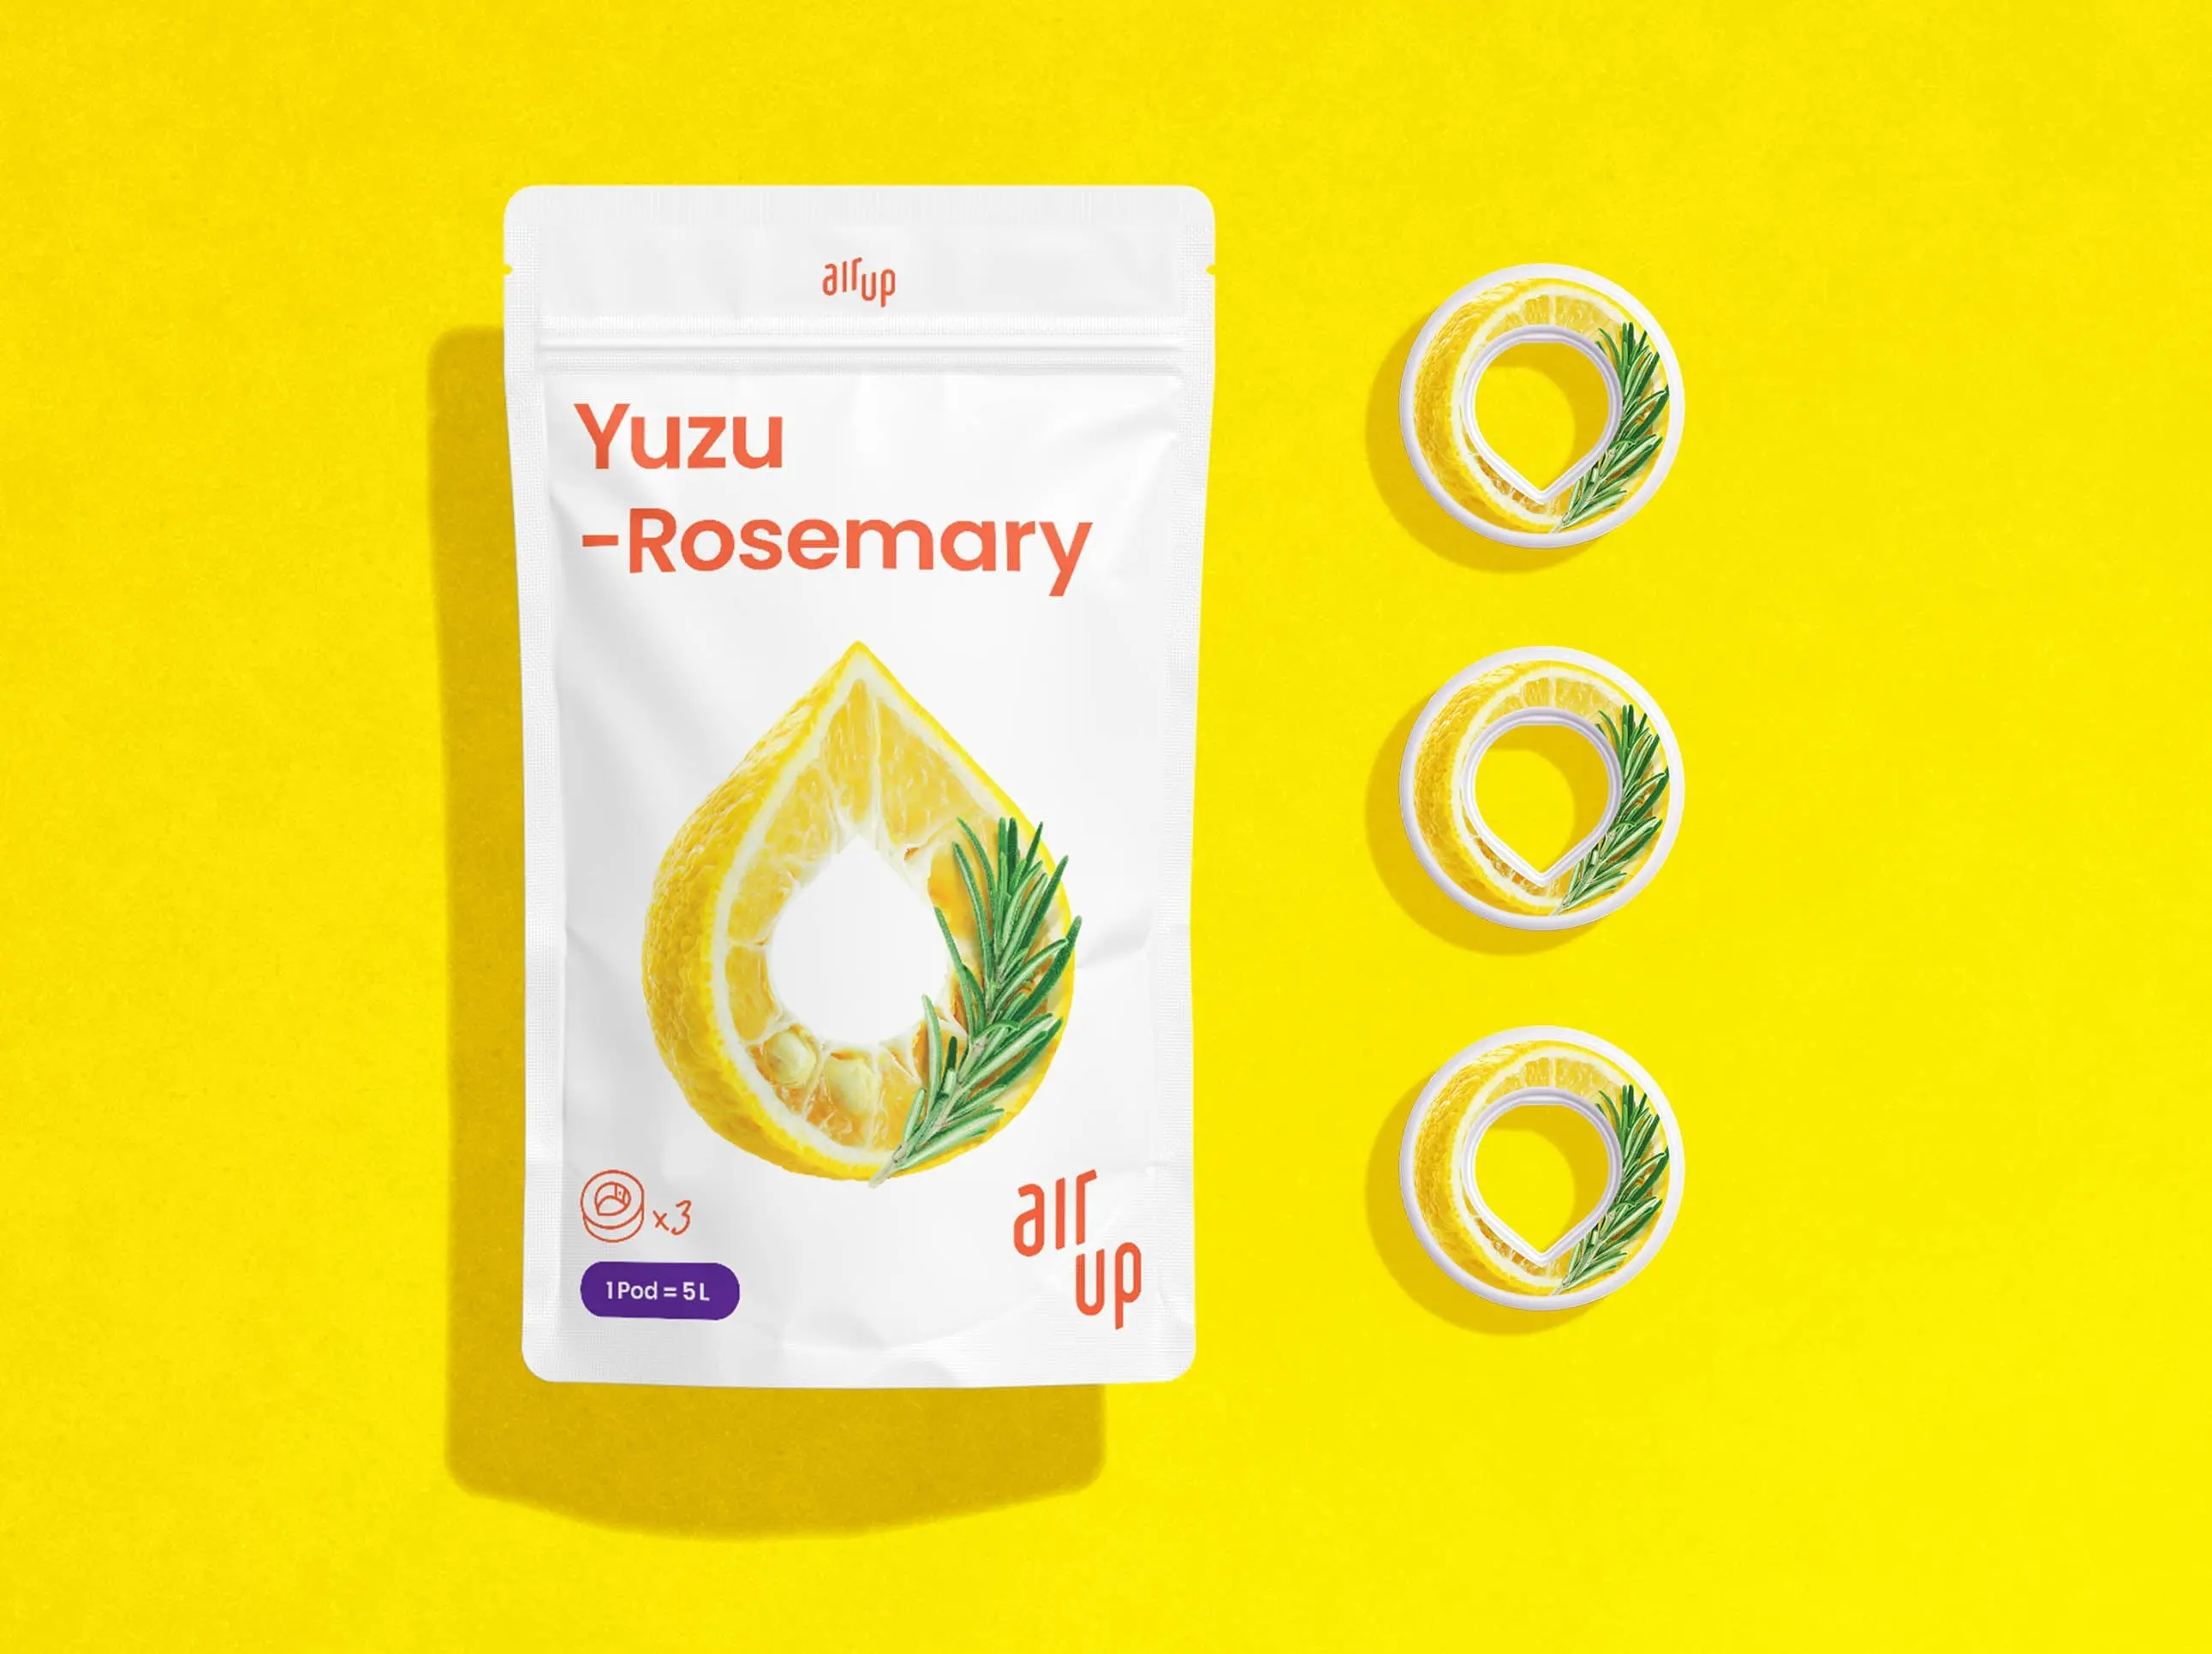 Yuzu-Rosemary Pods